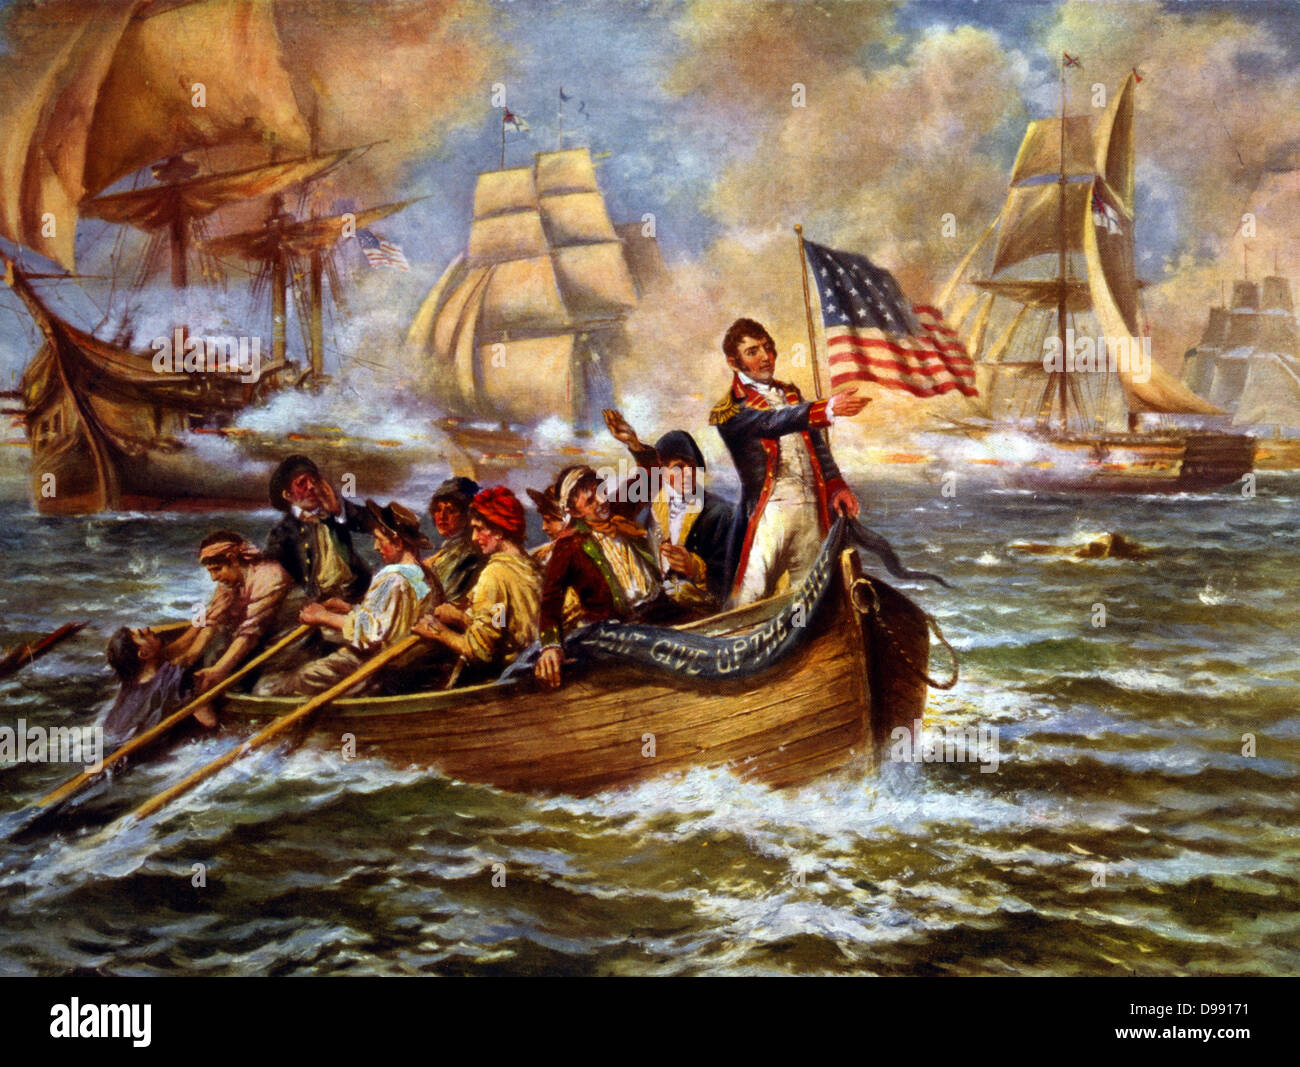 La guerra del 1812: Battaglia del Lago Erie (Put-in-Bay), Ohio, 10 settembre 1813. Oliver Hazard Perry in prua di una piccola barca a remi dopo aver abbandonato la sua punta "Lawrence' il trasferimento a "Niagara". Decisiva vittoria americana in Gran Bretagna. Naval. C1911 Foto Stock